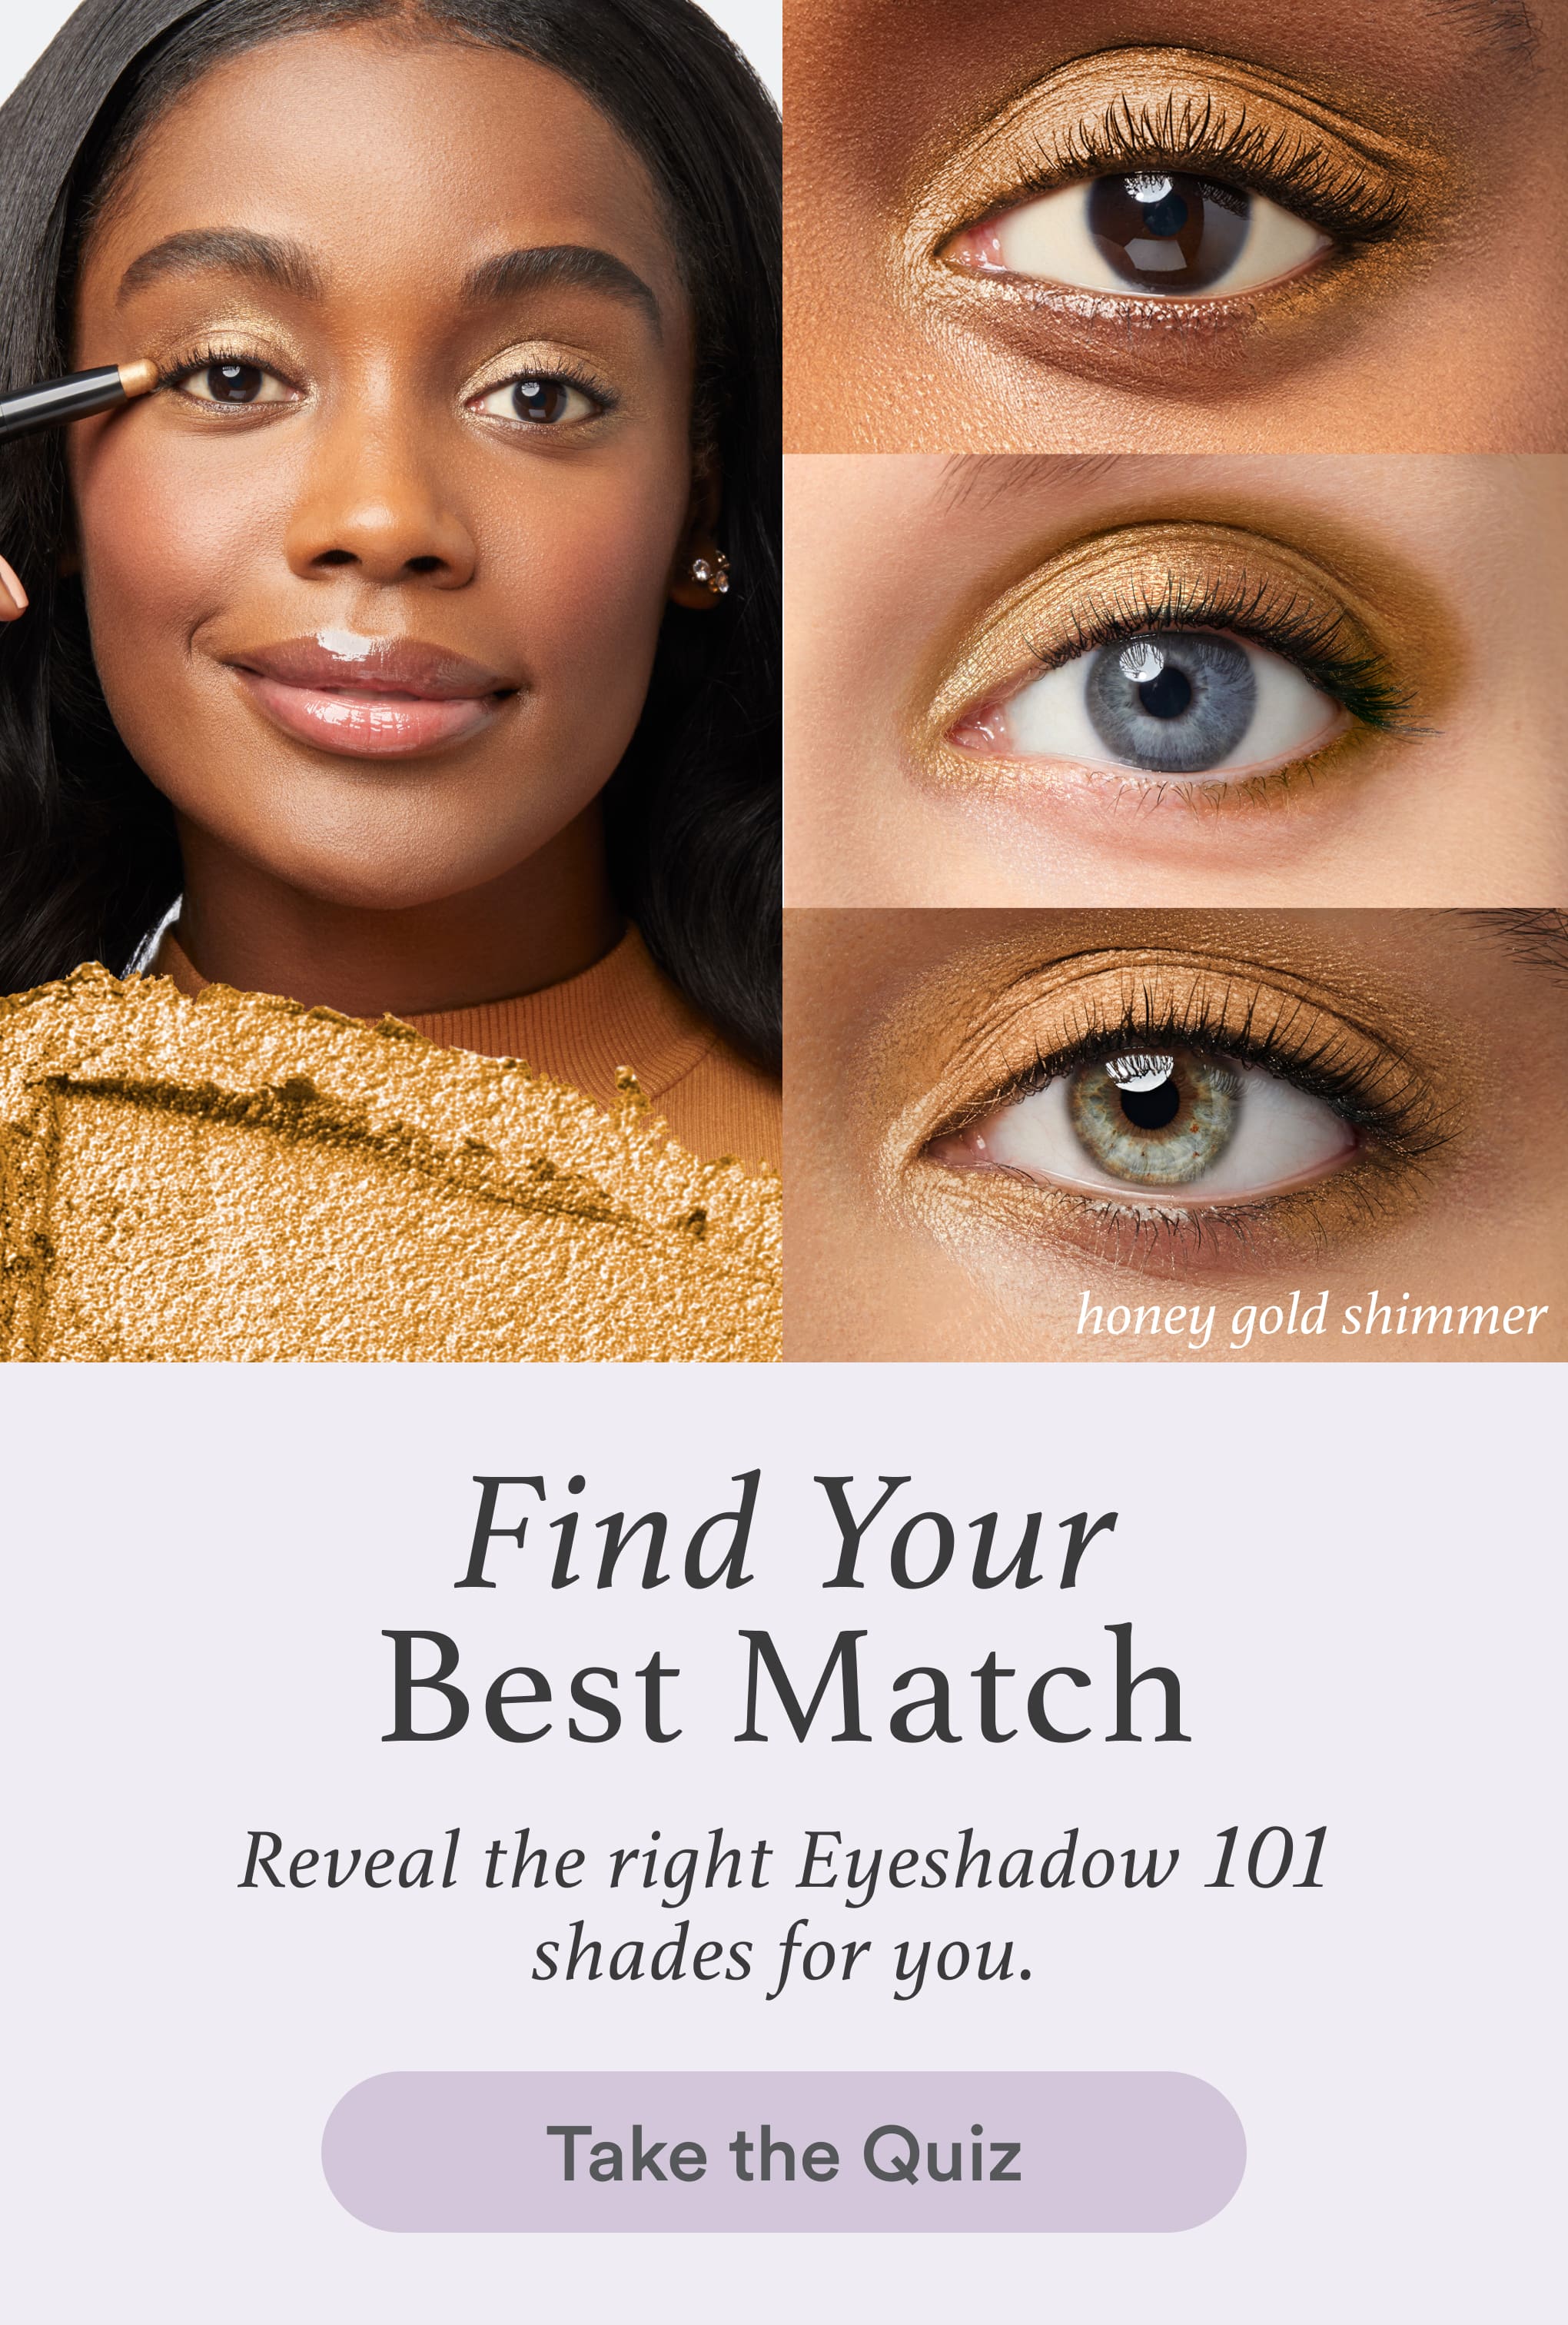 Everything Eyeshadow 101 Promotional Image